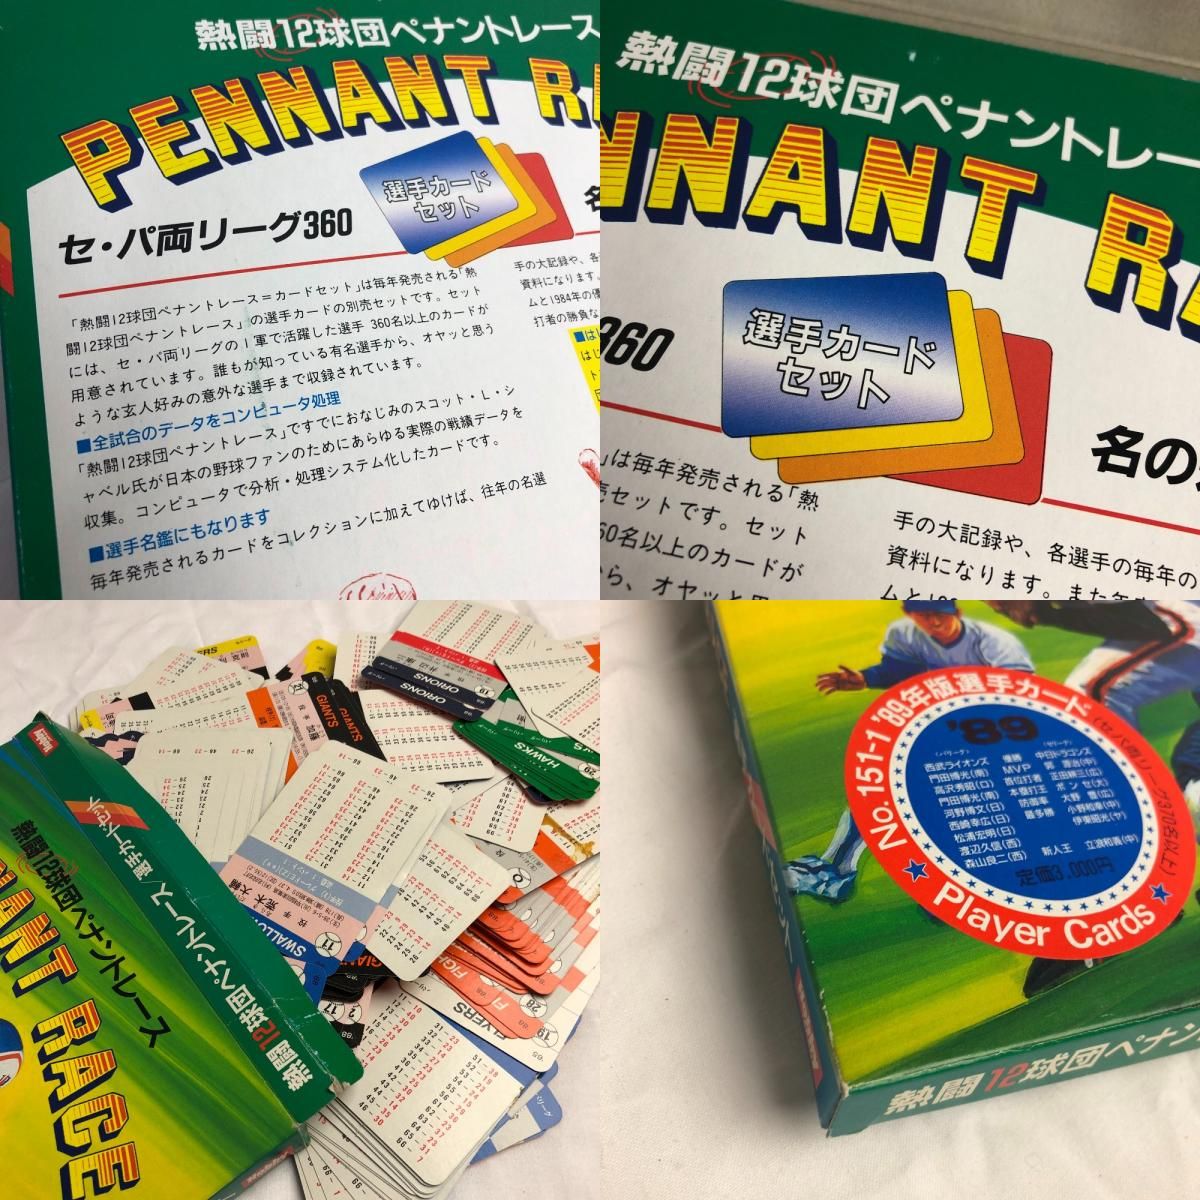 ホビージャパン 熱闘12球団ペナントレース 選手カードセット ボード 